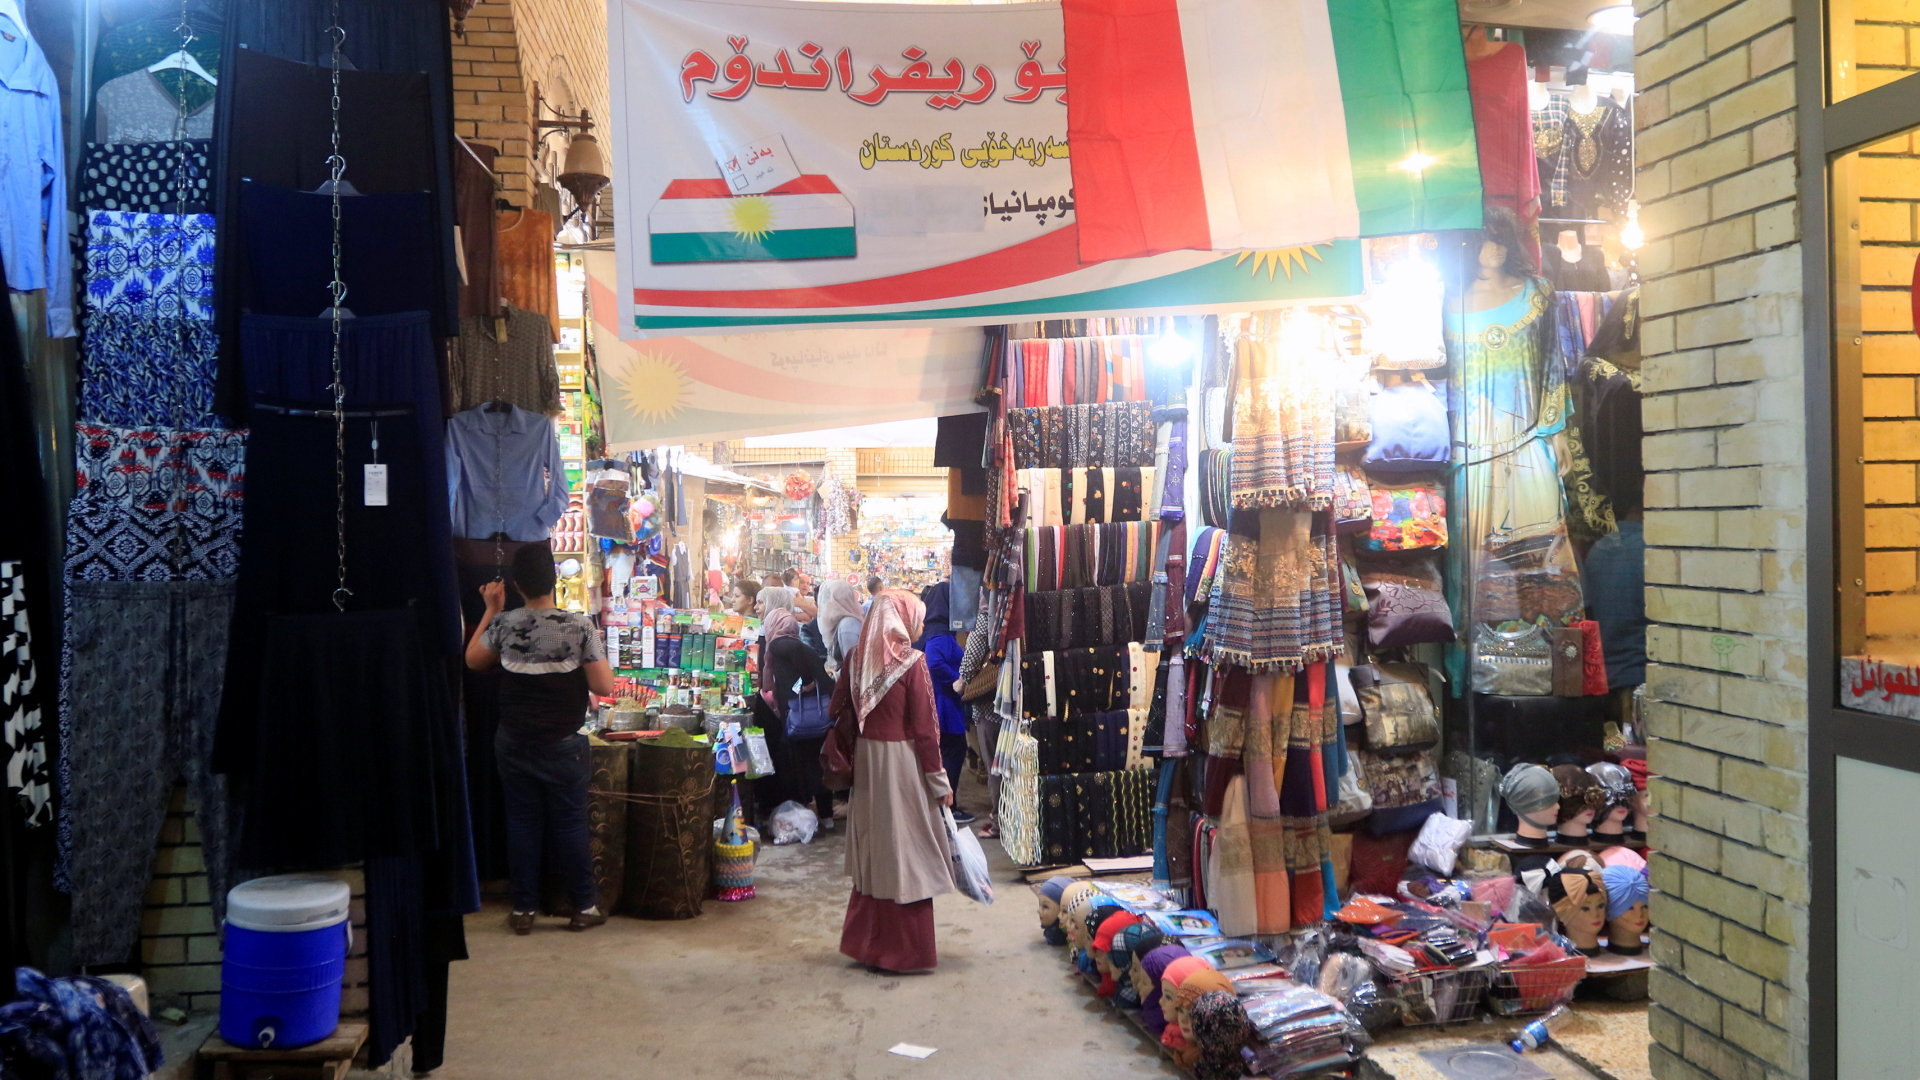 Werbung für das Unabhängigkeitsreferendum in einem Markt in Erbil | REUTERS